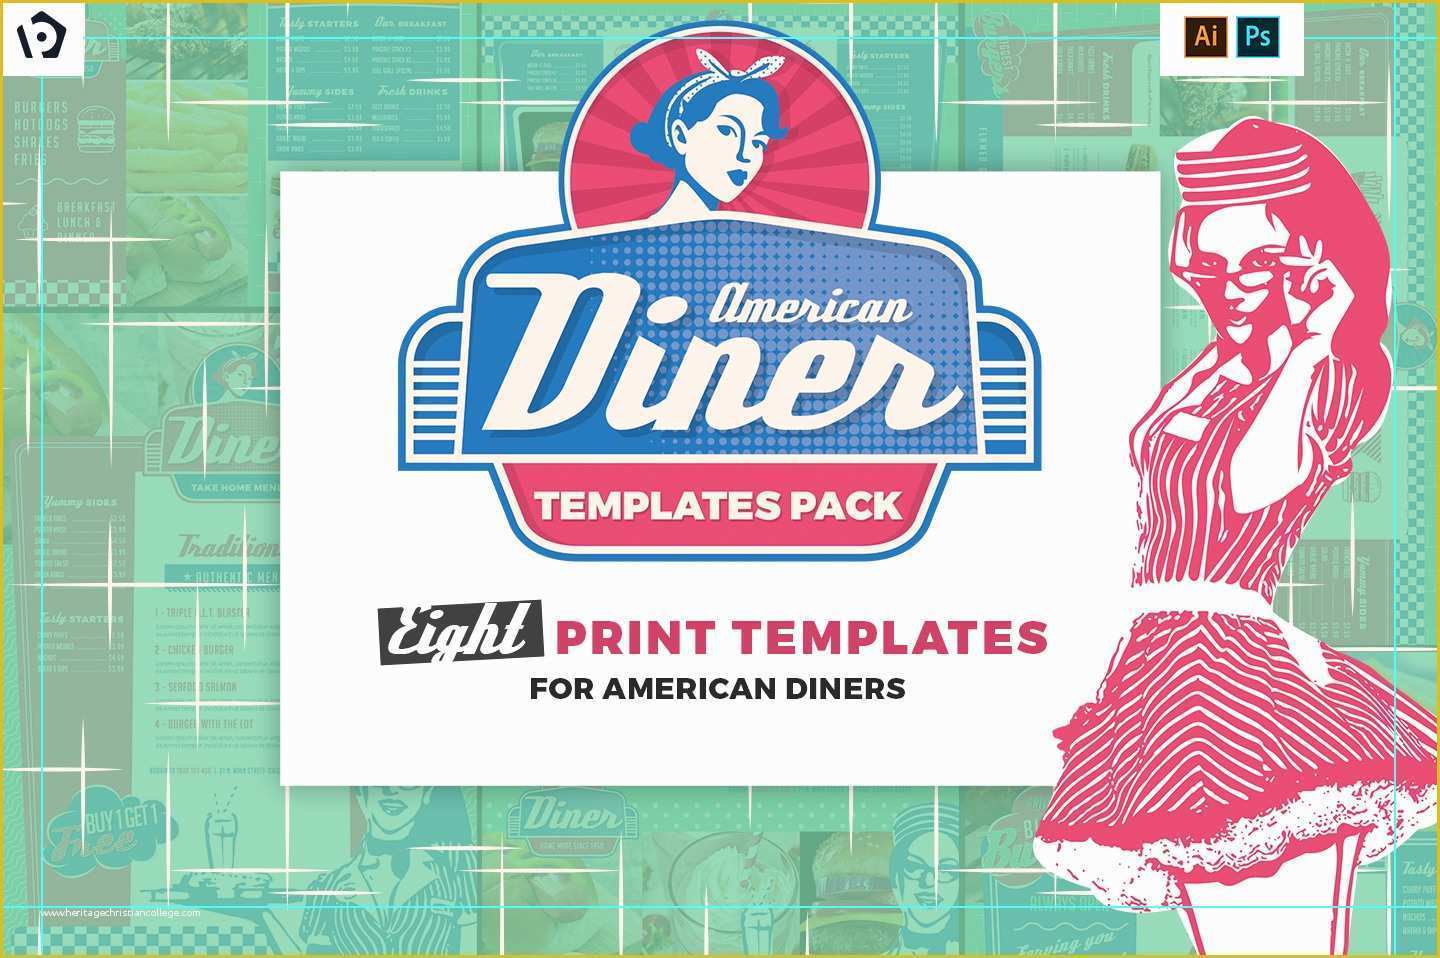 Free Diner Menu Template Of American Diner Templates Pack by Brandpacks Brandpacks